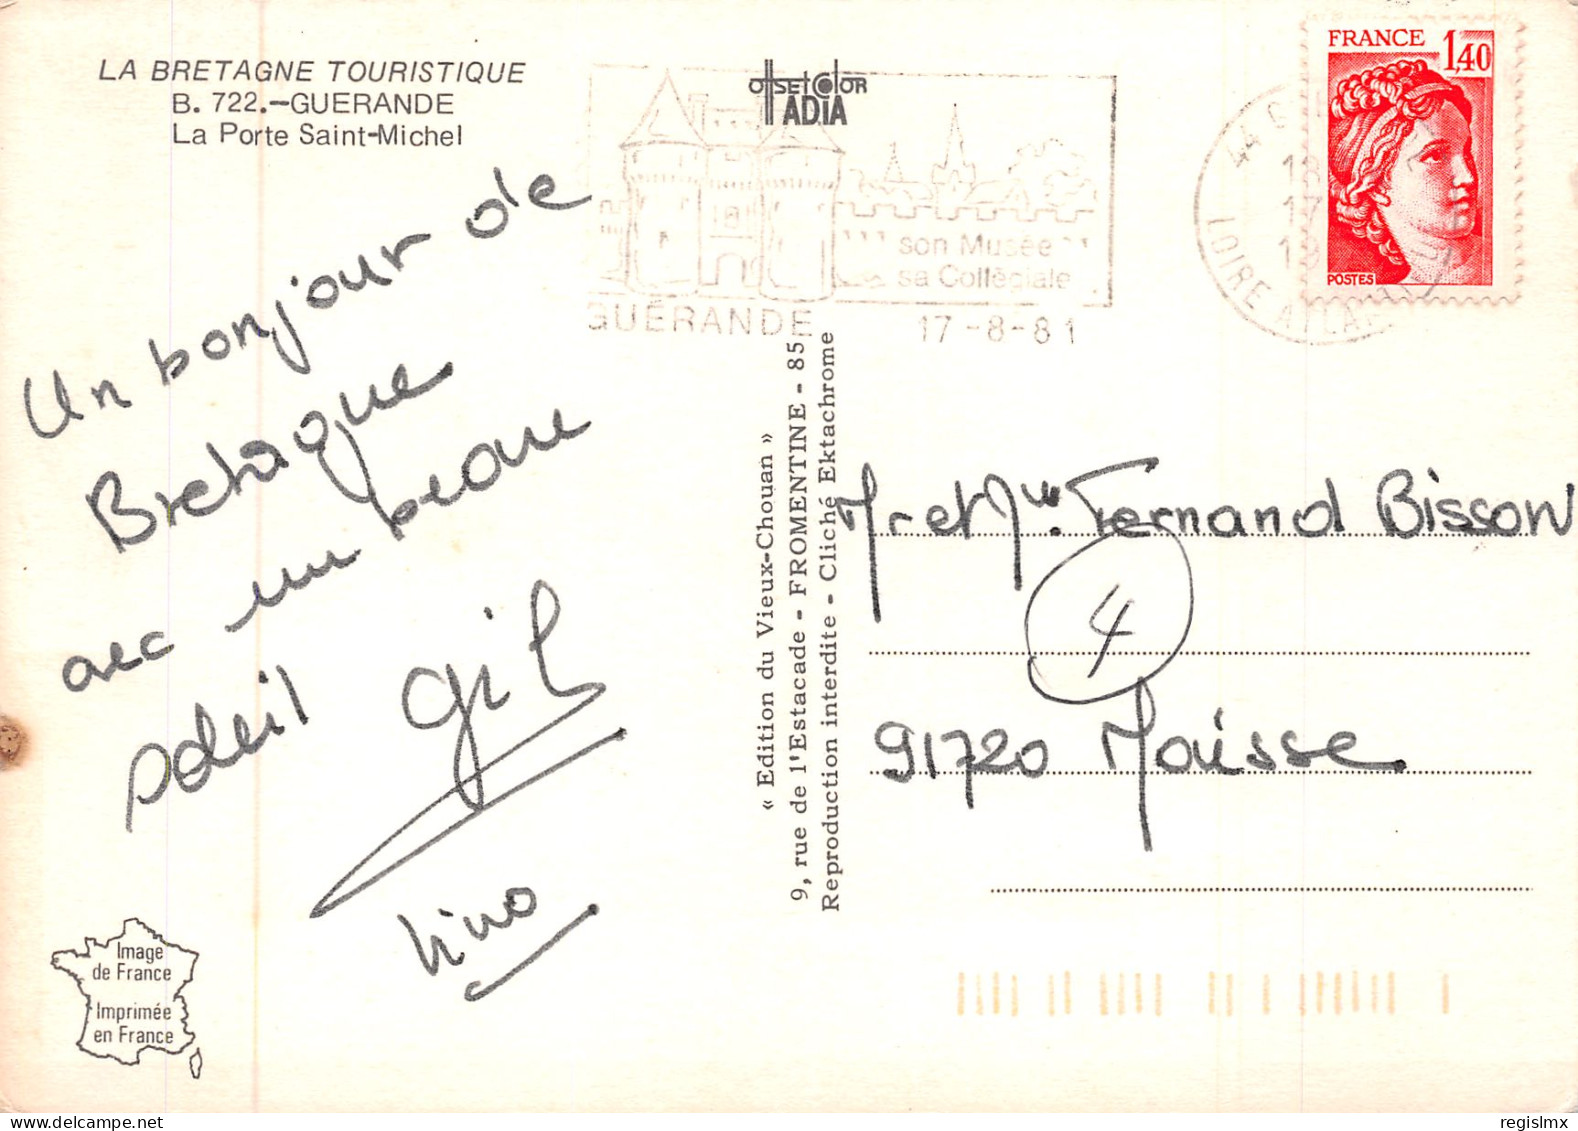 44-GUERANDE-N°T2660-B/0247 - Guérande